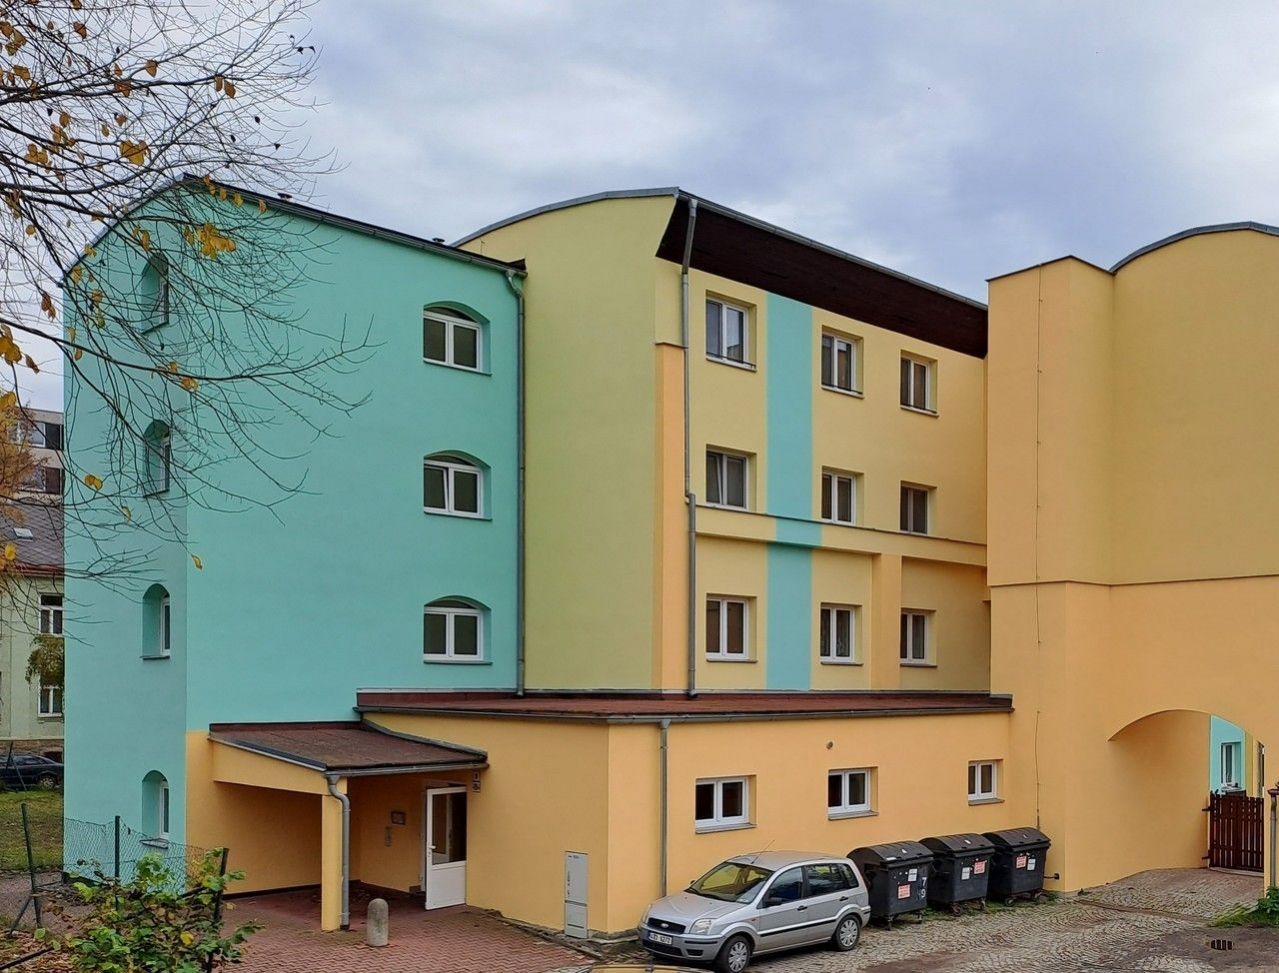 Prodej bezbariérového bytu 5+1 v OV s dvougaráží a dvěma parkovacími místy na ul.Telečská v Jihlavě.